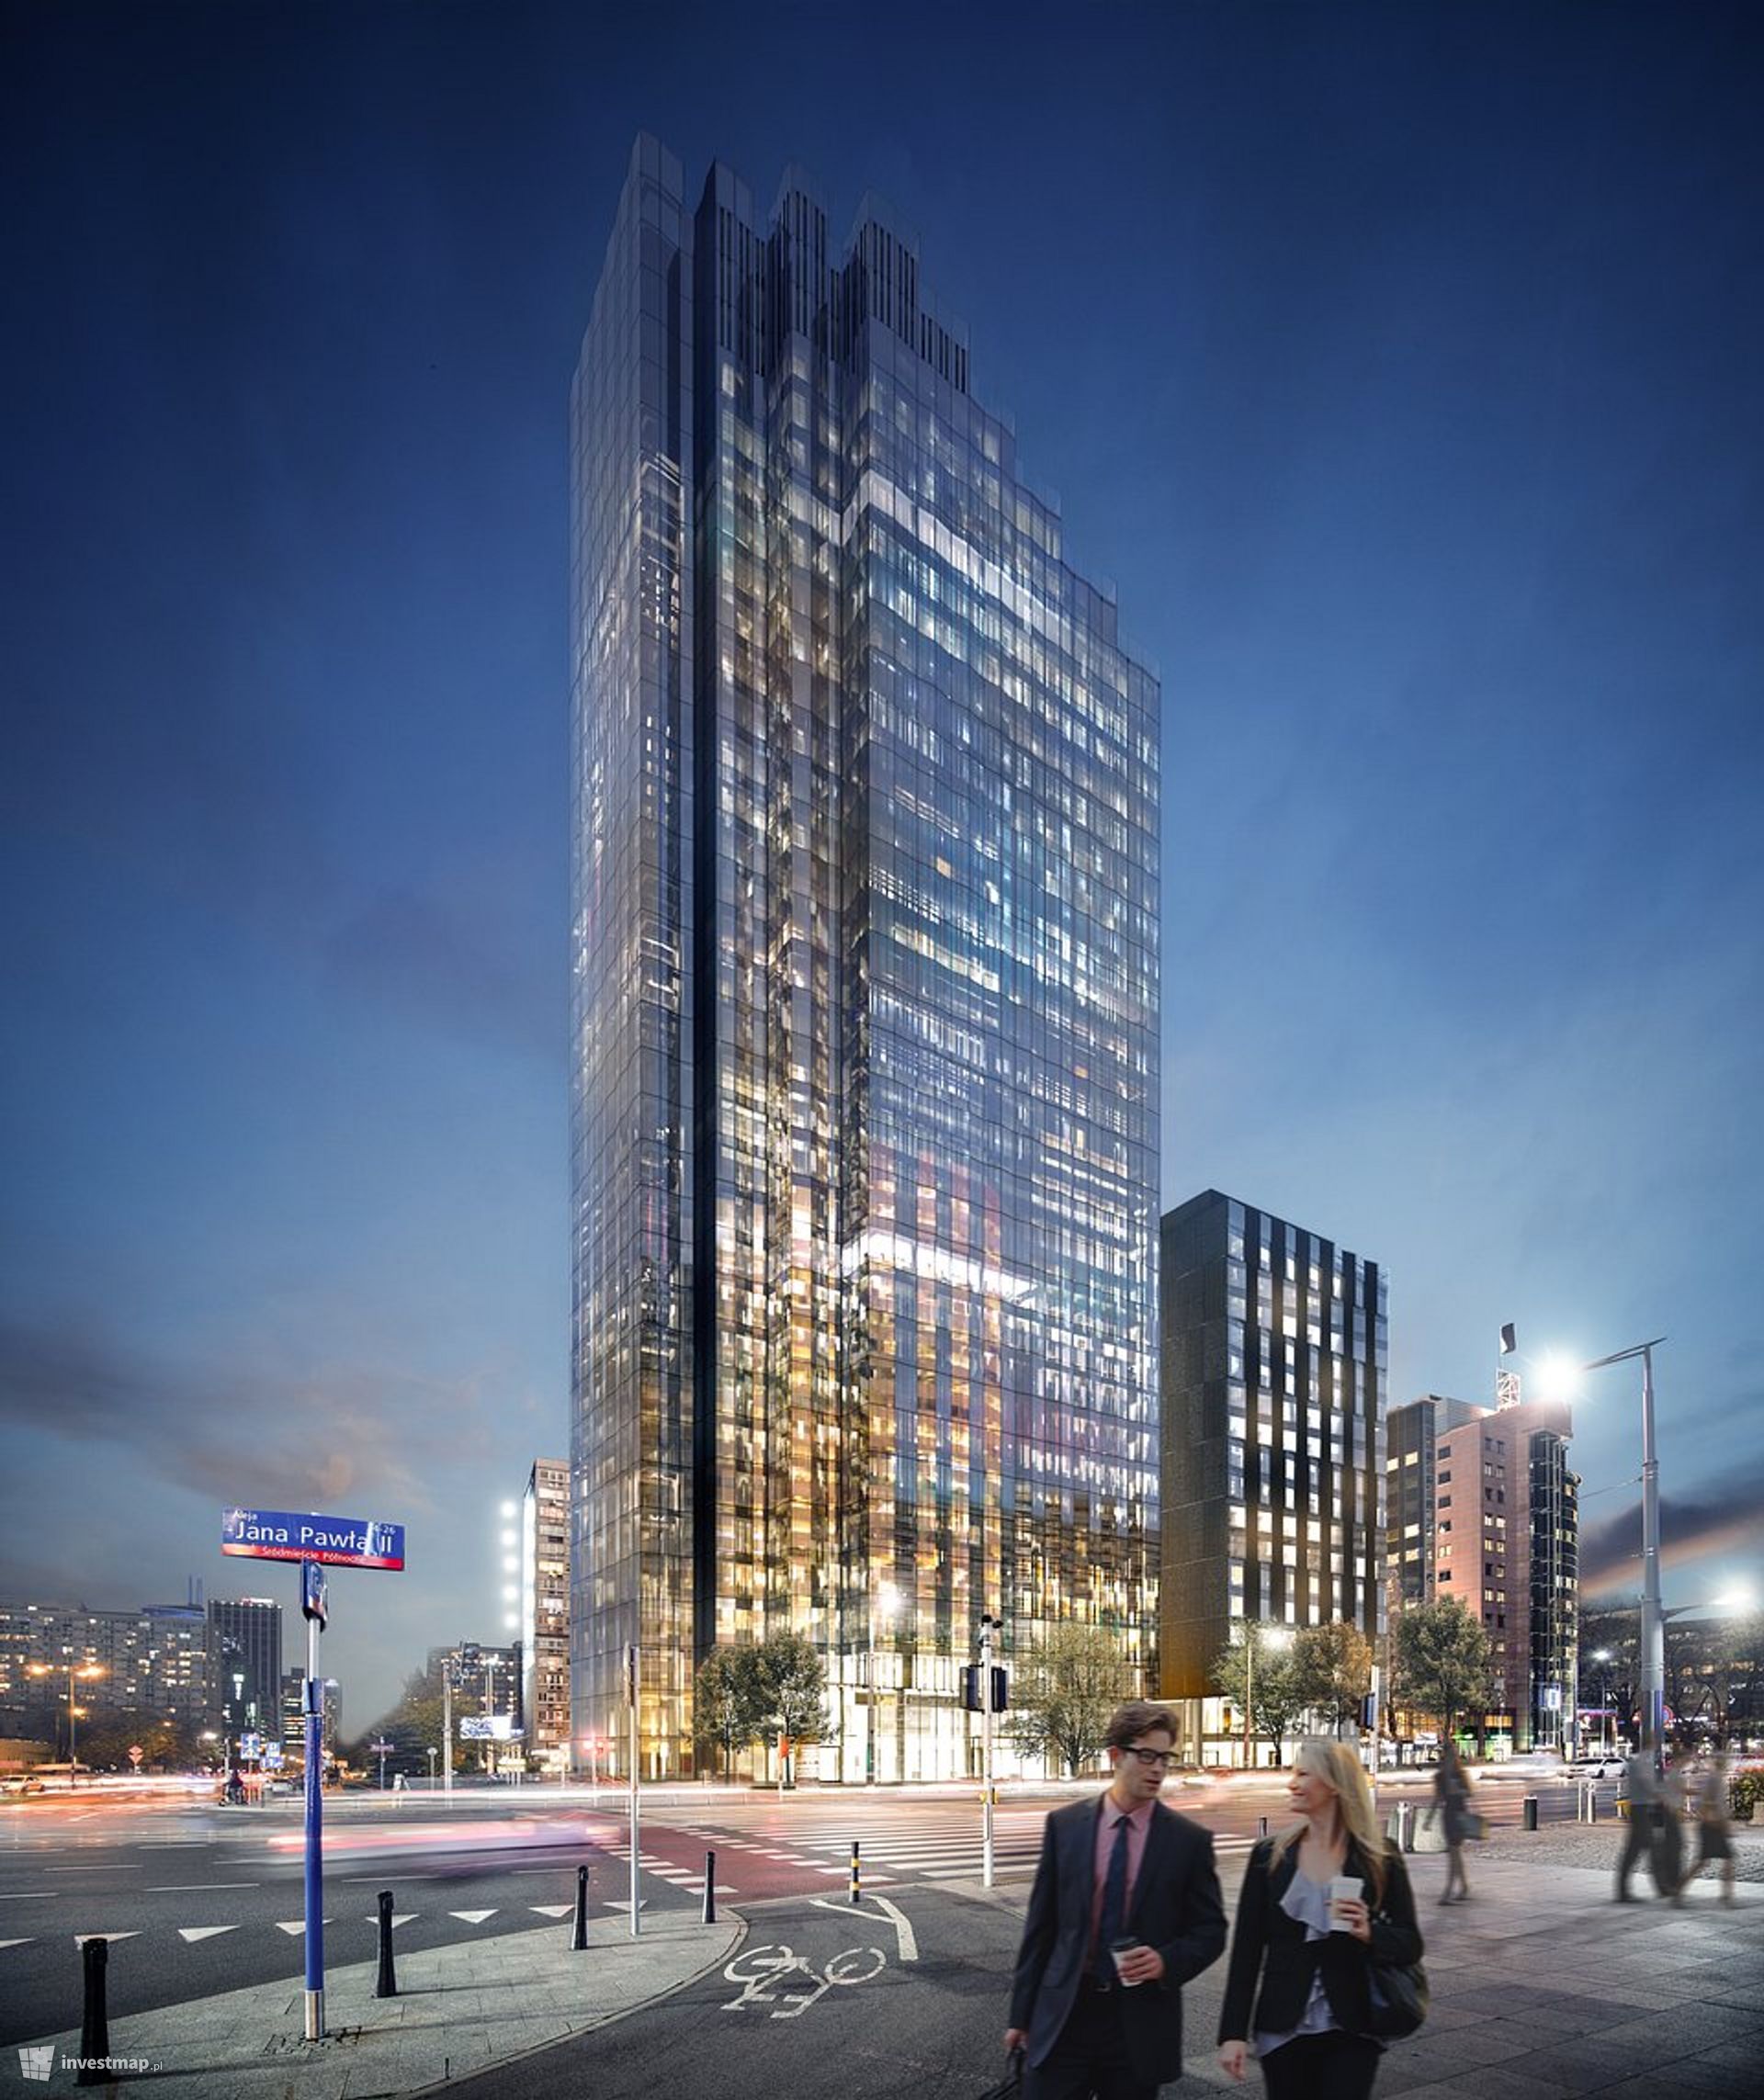 W Warszawie powstaje nowy kompleks biurowo-hotelowy Upper One ze 130-metrowym wieżowcem 